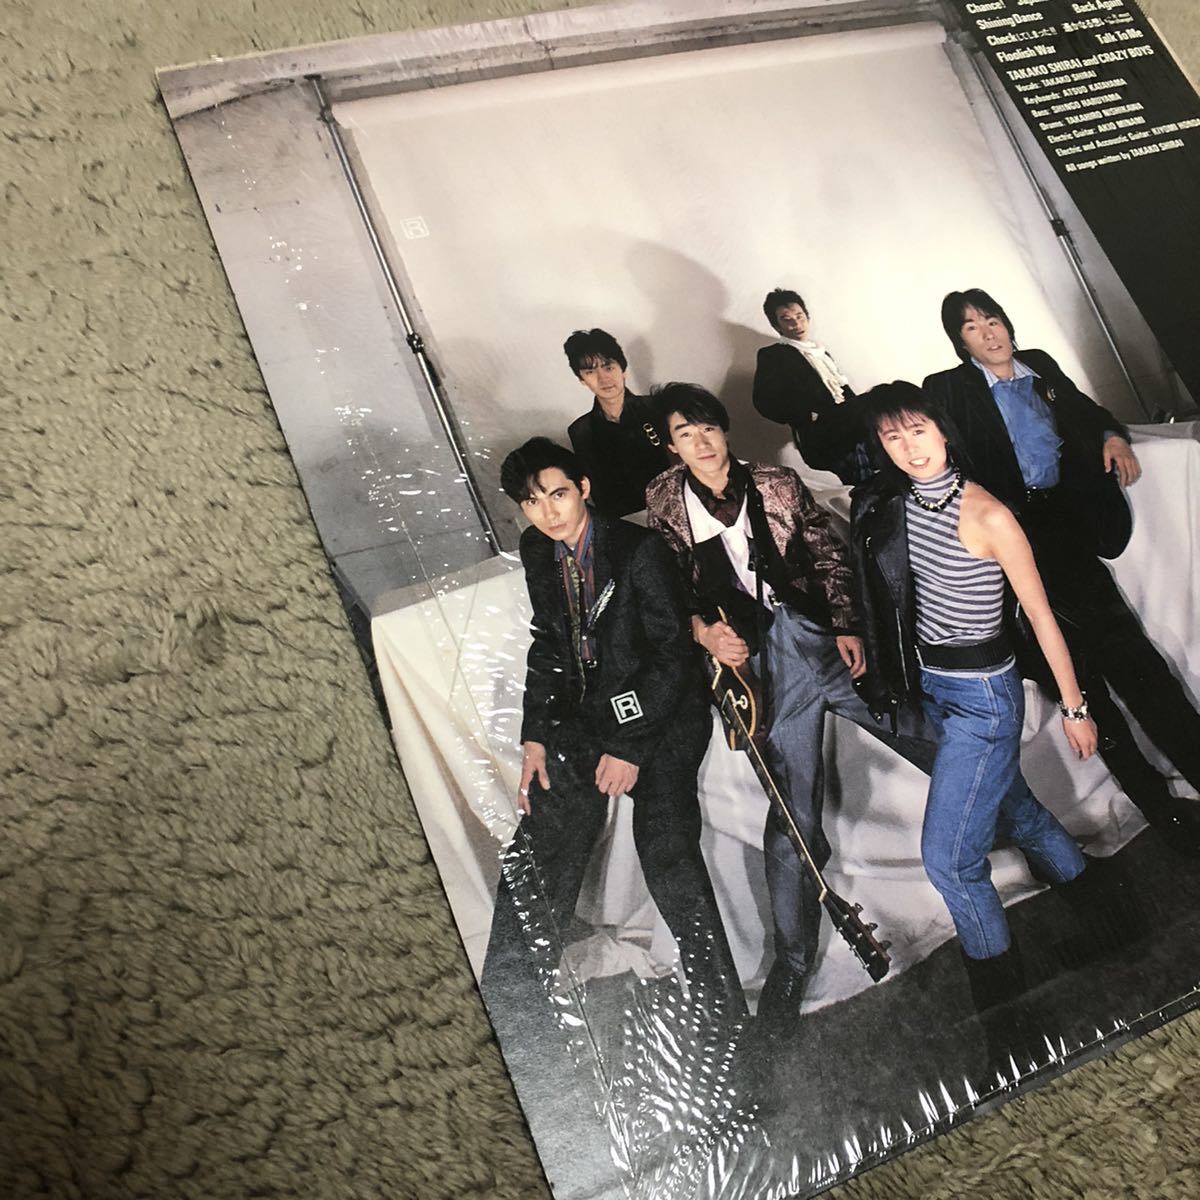 白井貴子&CRAZY BOYS FLOWER POWER / LP レコード / 28AH1847 / カラーブックレット付 / 和バンド 和モノ 80年代 /の画像3